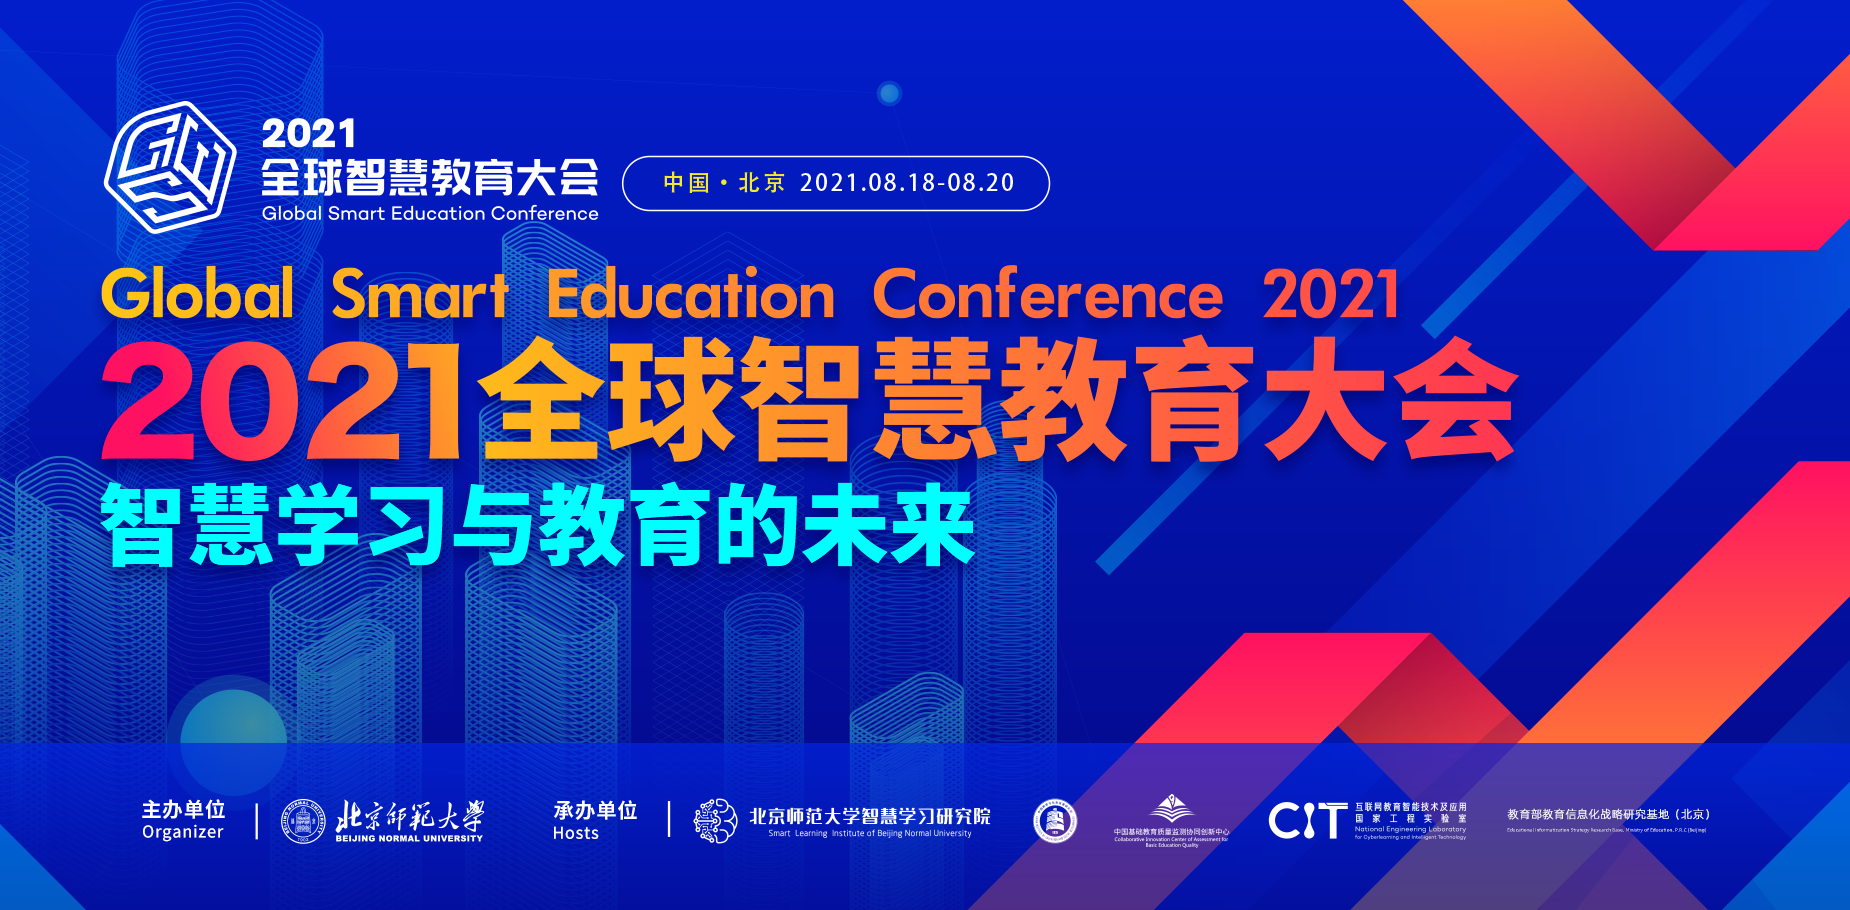 “2021全球智慧教育大会”将于8月在京举行